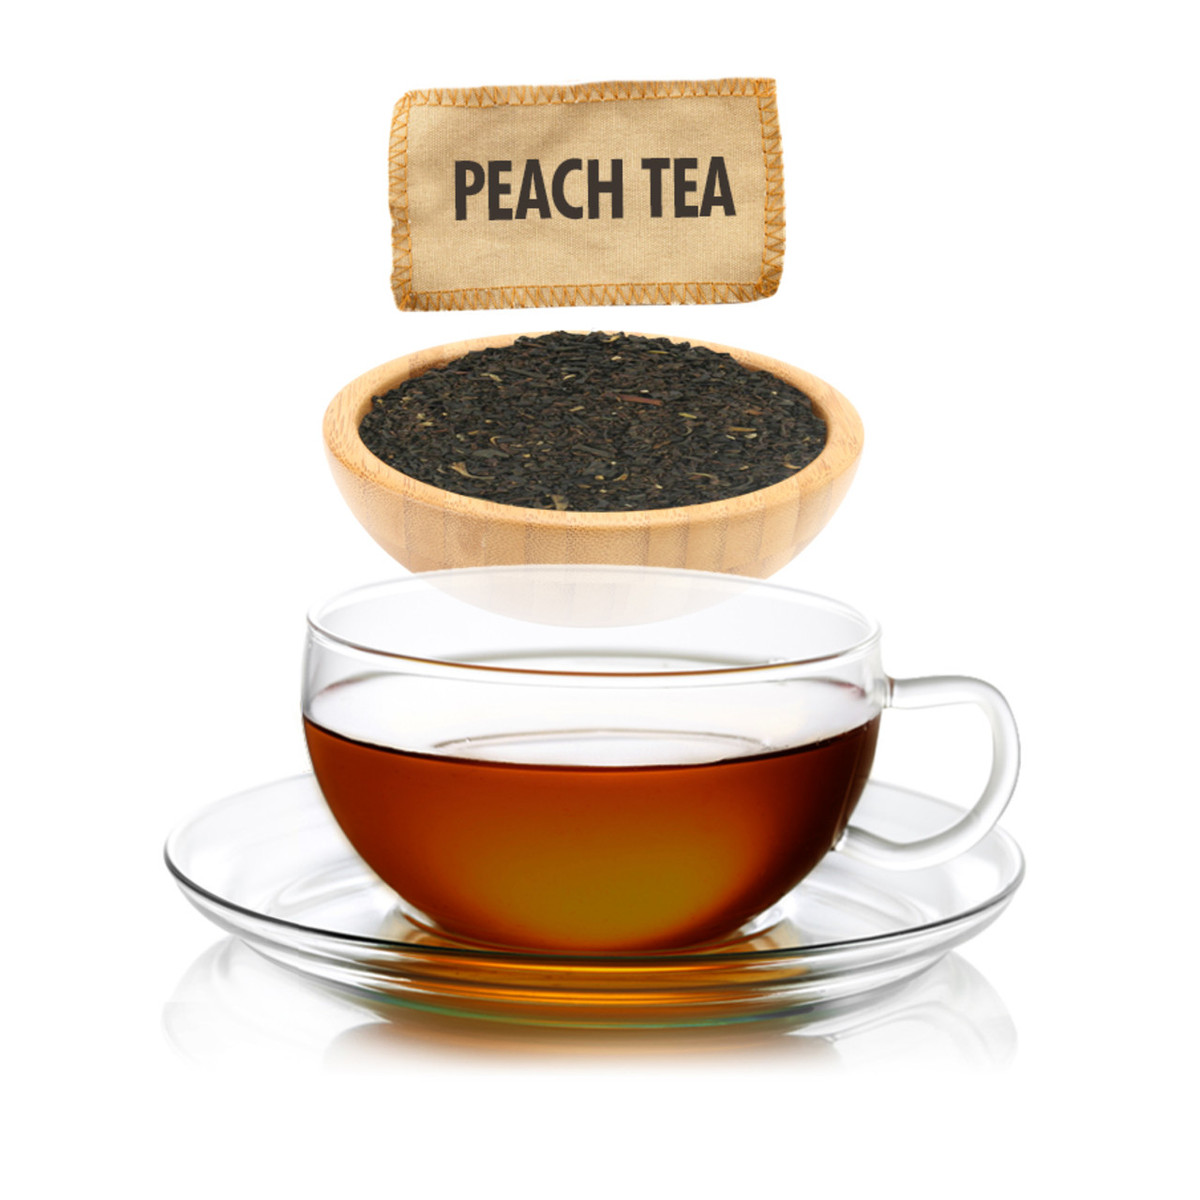 Simple Peach Black Tea - Black Tea - High Caffeine - All Natural Flavo